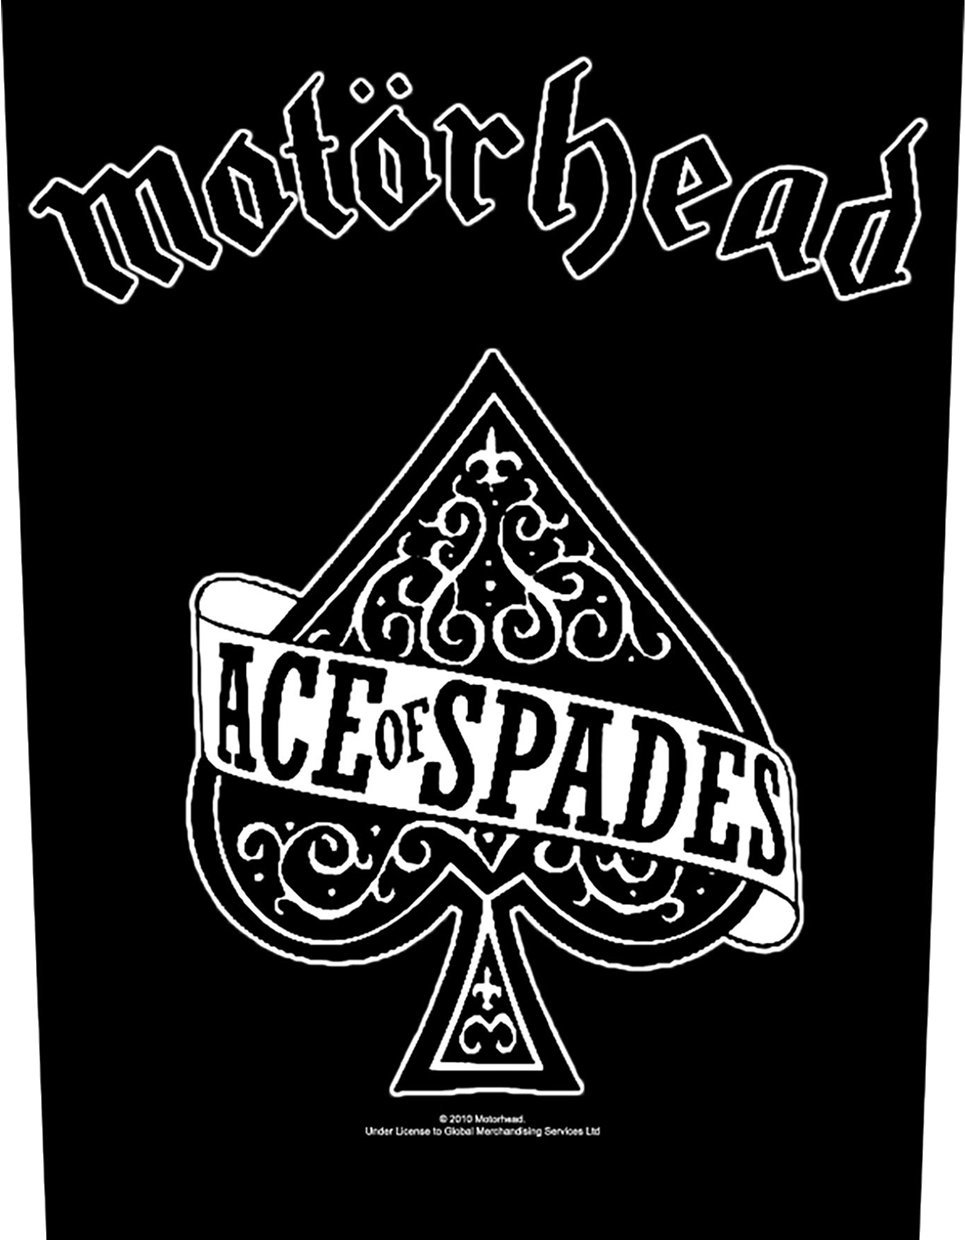 Patch-uri Motörhead Ace Of Spades Patch-uri